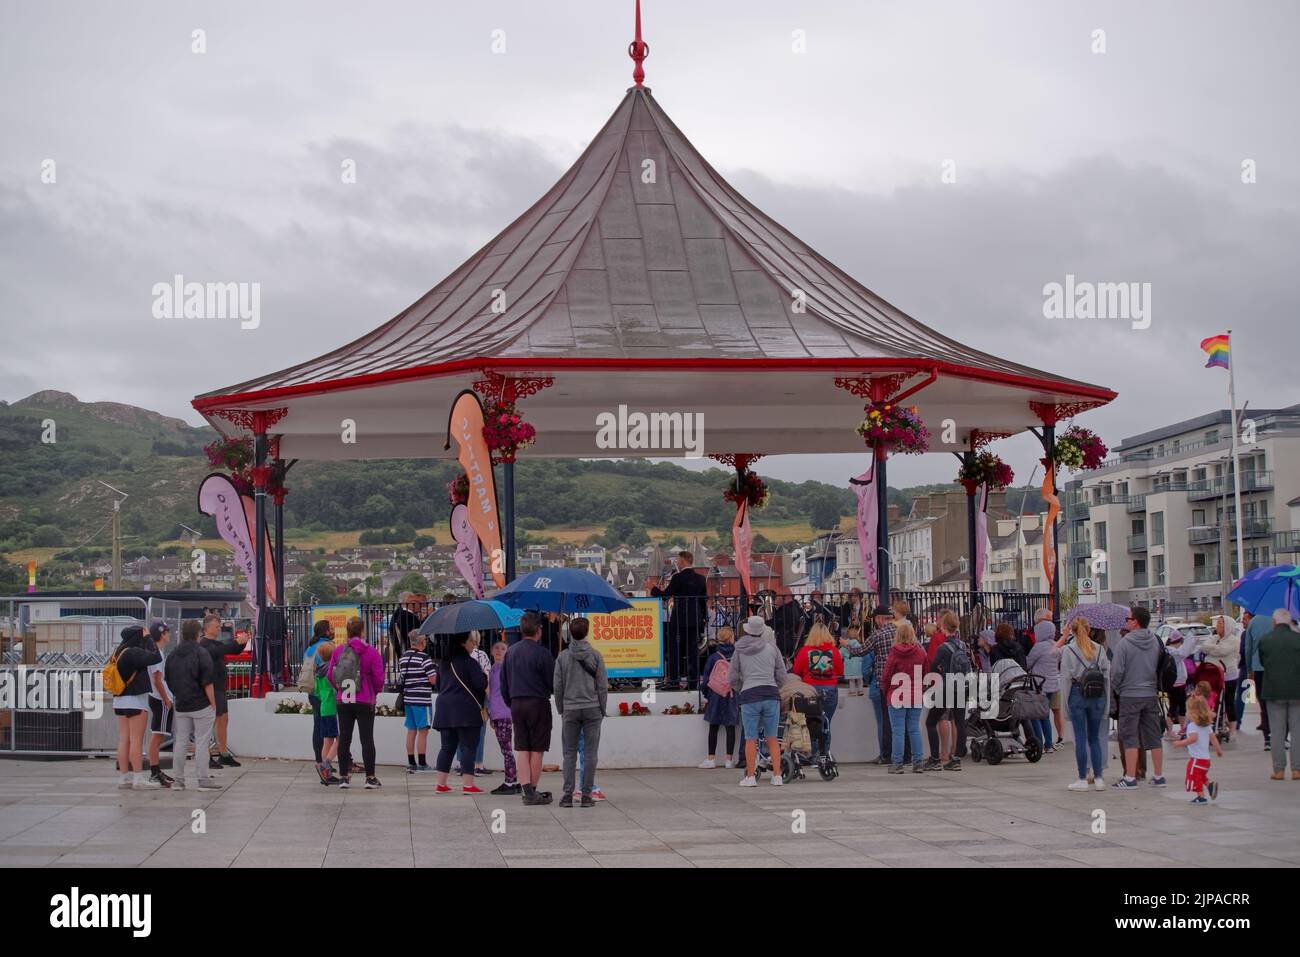 Das Summer Sounds Konzert spielte im Regen auf dem Strandstand am Meer in Bray, Irland. Lokale Veranstaltung in einer Reihe von kostenlosen Konzerten am Sonntagnachmittag. Stockfoto